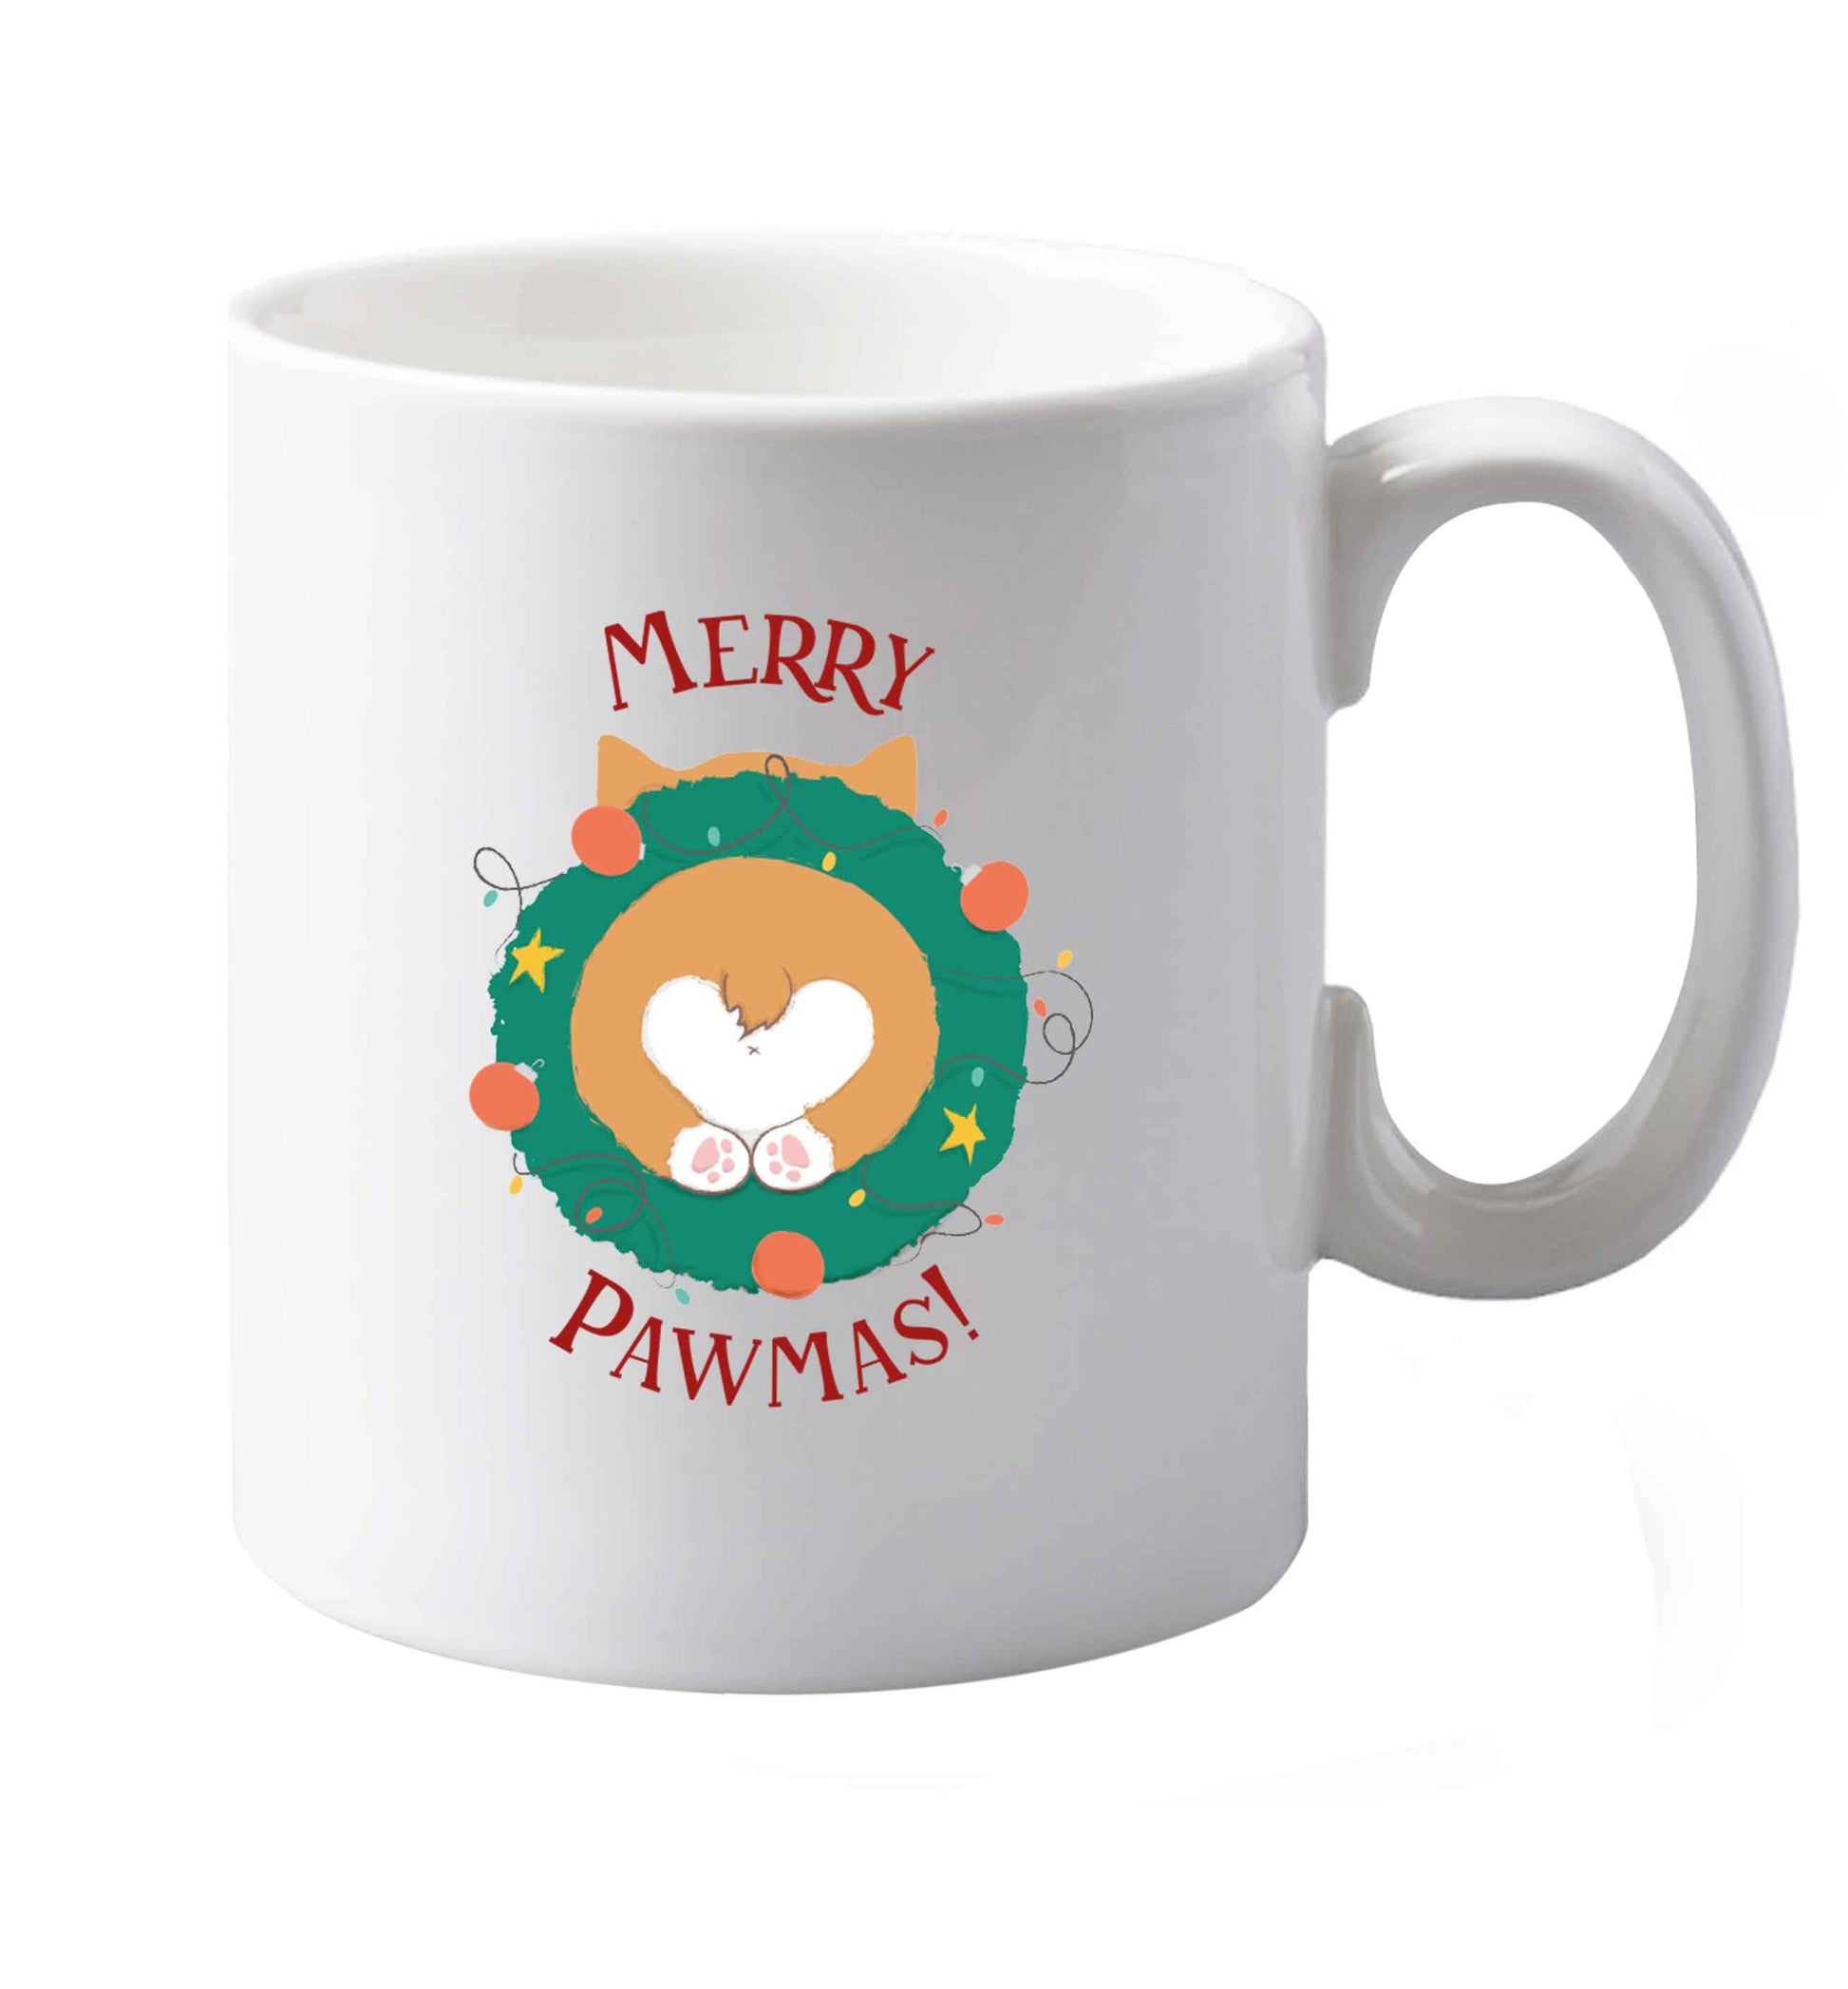 10 oz Merry Pawmas ceramic mug both sides